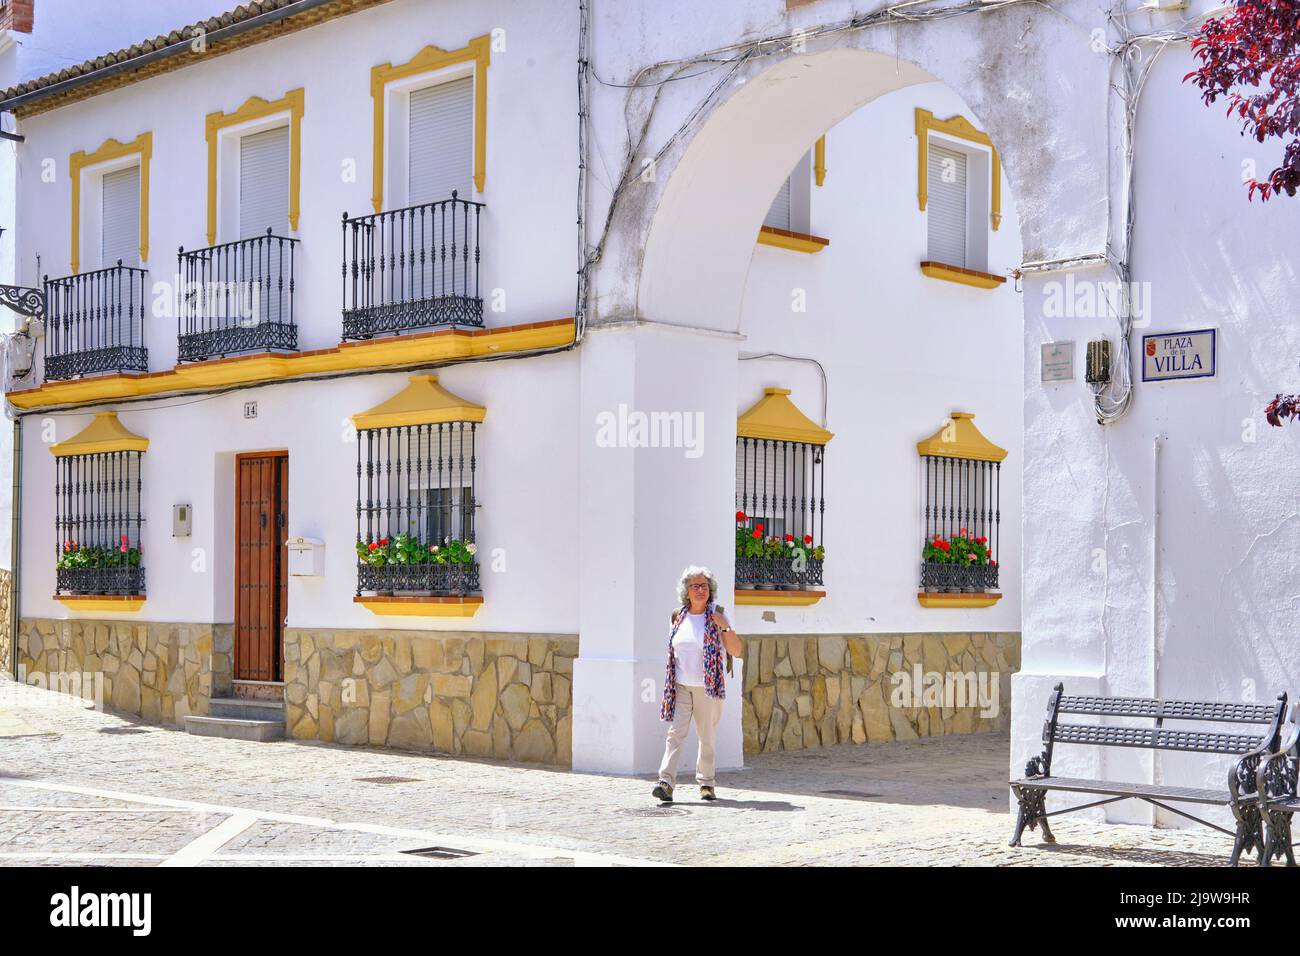 Setenil de las Bodegas, Andalusien. Spanien (MR) Stockfoto